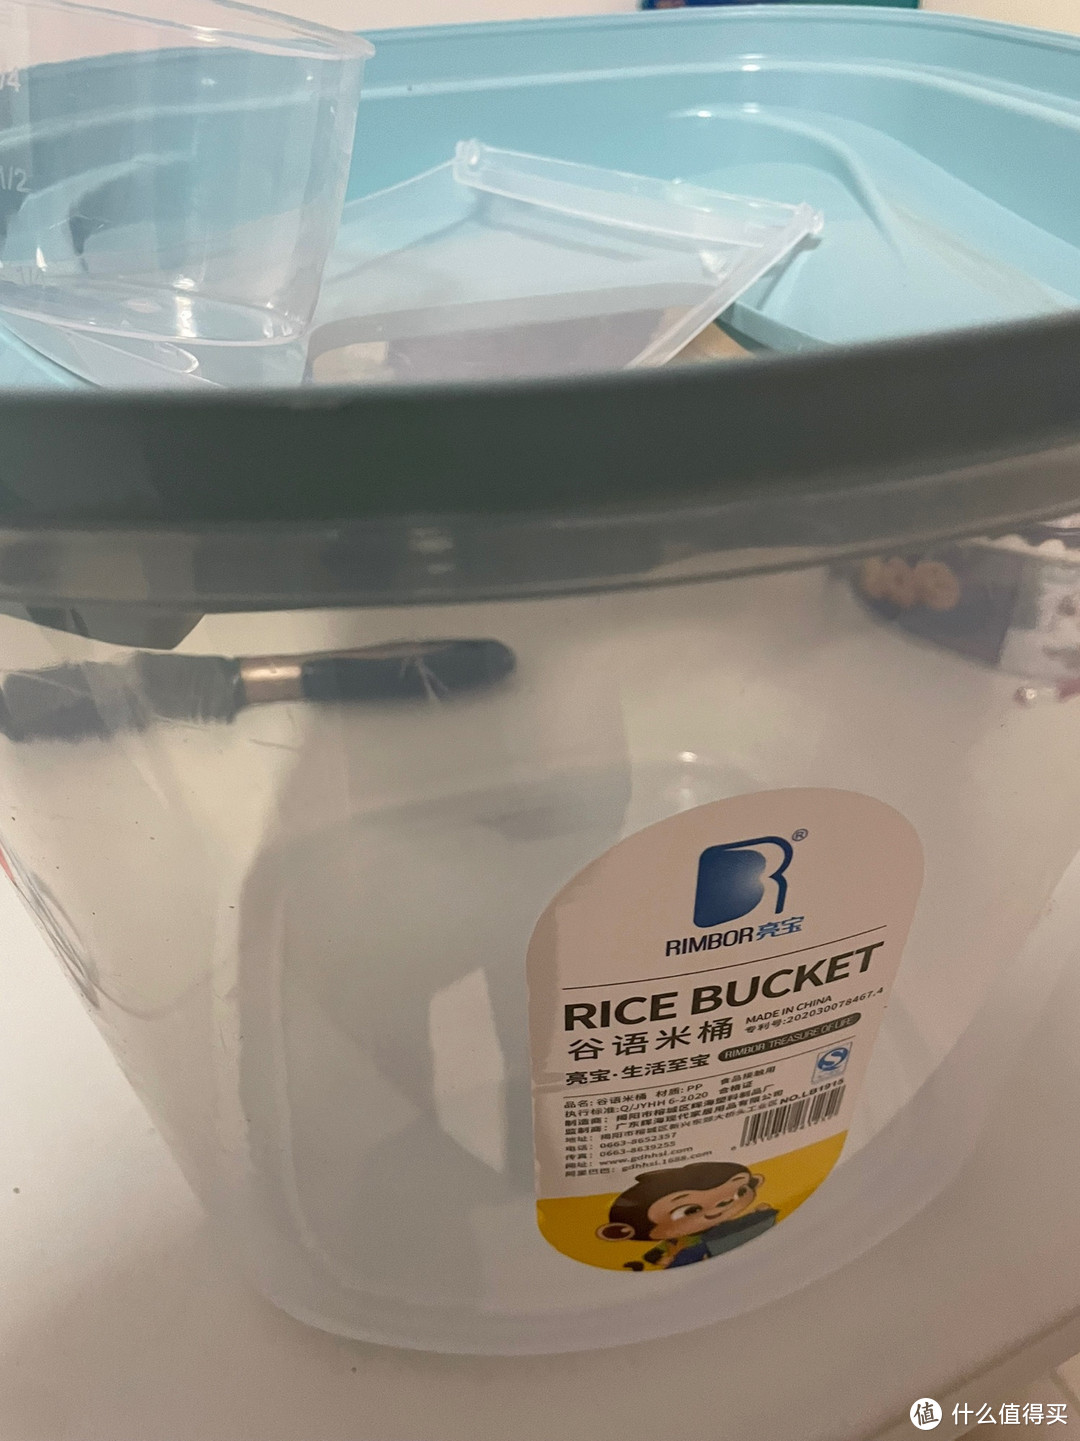 厨房家用装米桶透明储米箱防潮